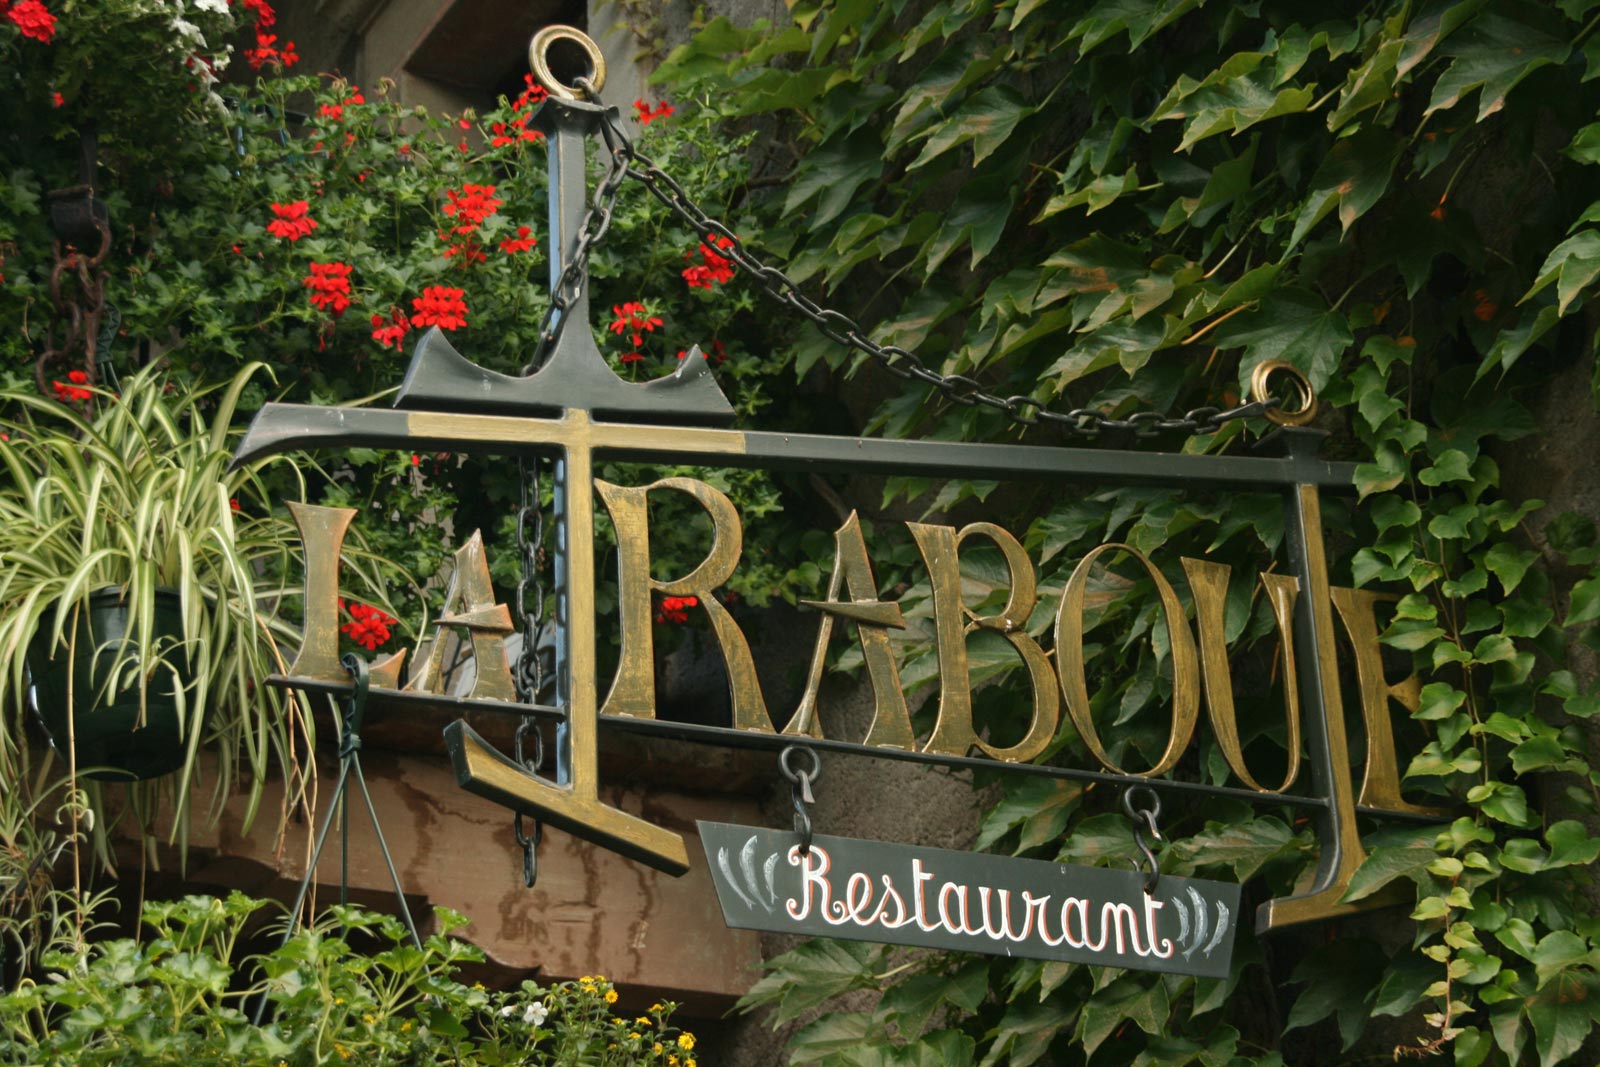 Restaurant La Traboule, Yvoire.